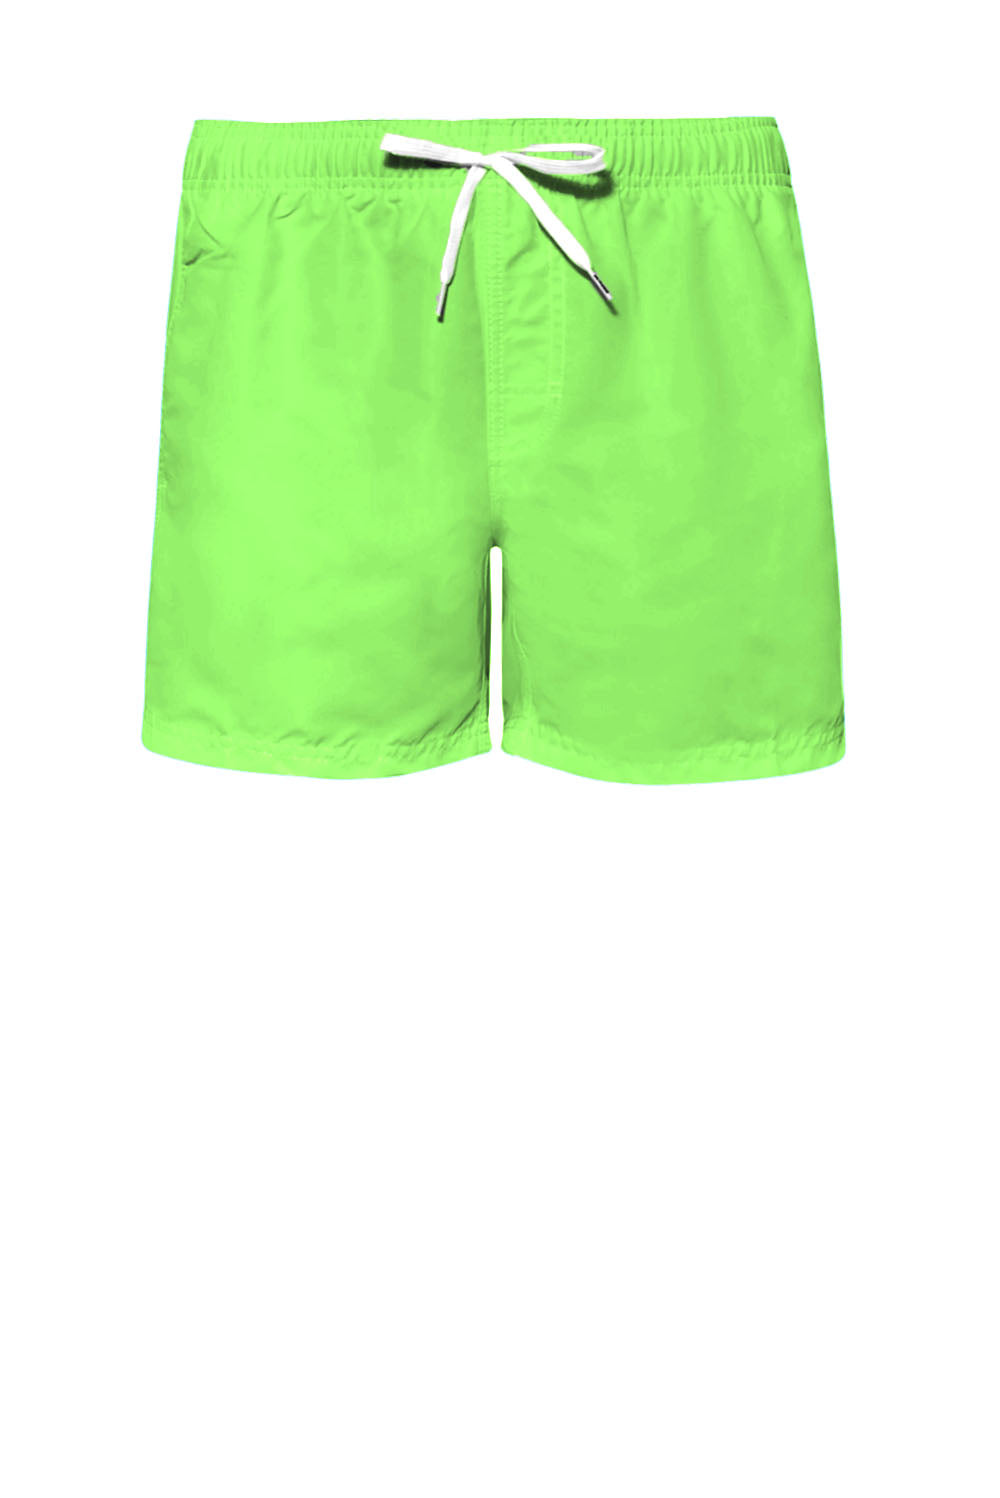  Sundek Boxer Beach Wear Fluo Green Uomo - 1